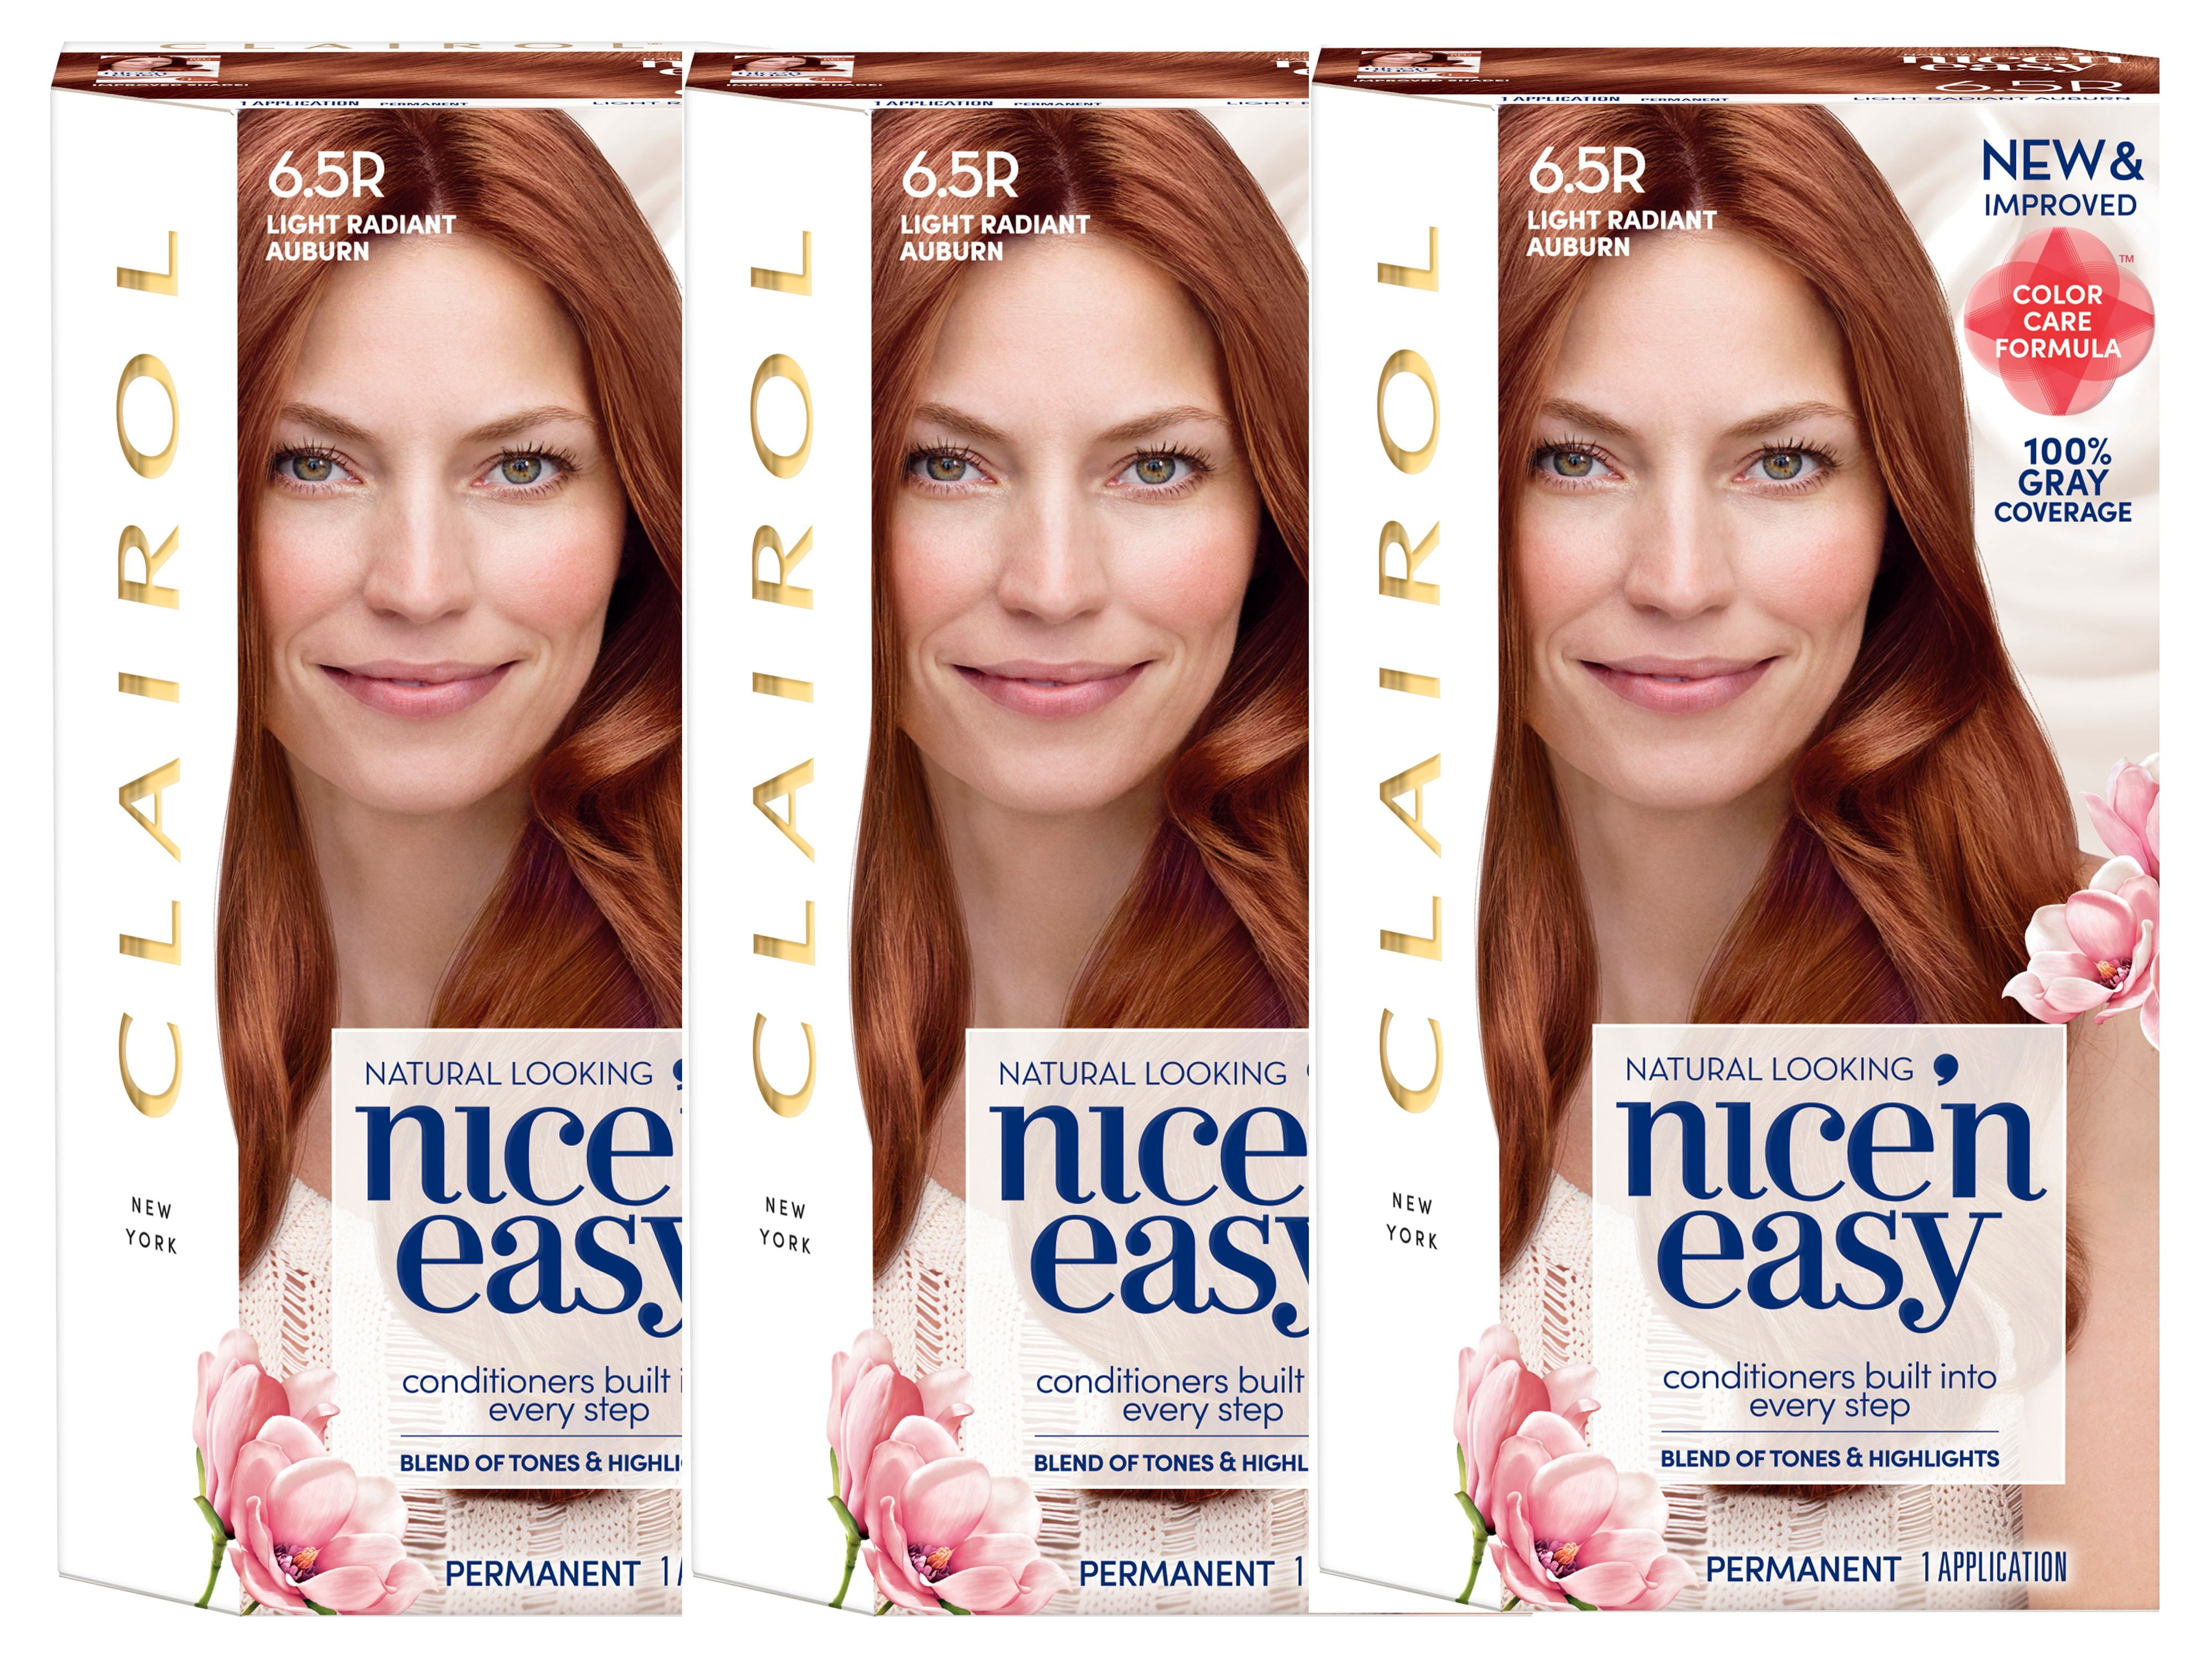 Clairol Nice'n Easy Permanent Hair Color, 8R Medium Reddish Blonde, Pack of 1 - wide 11